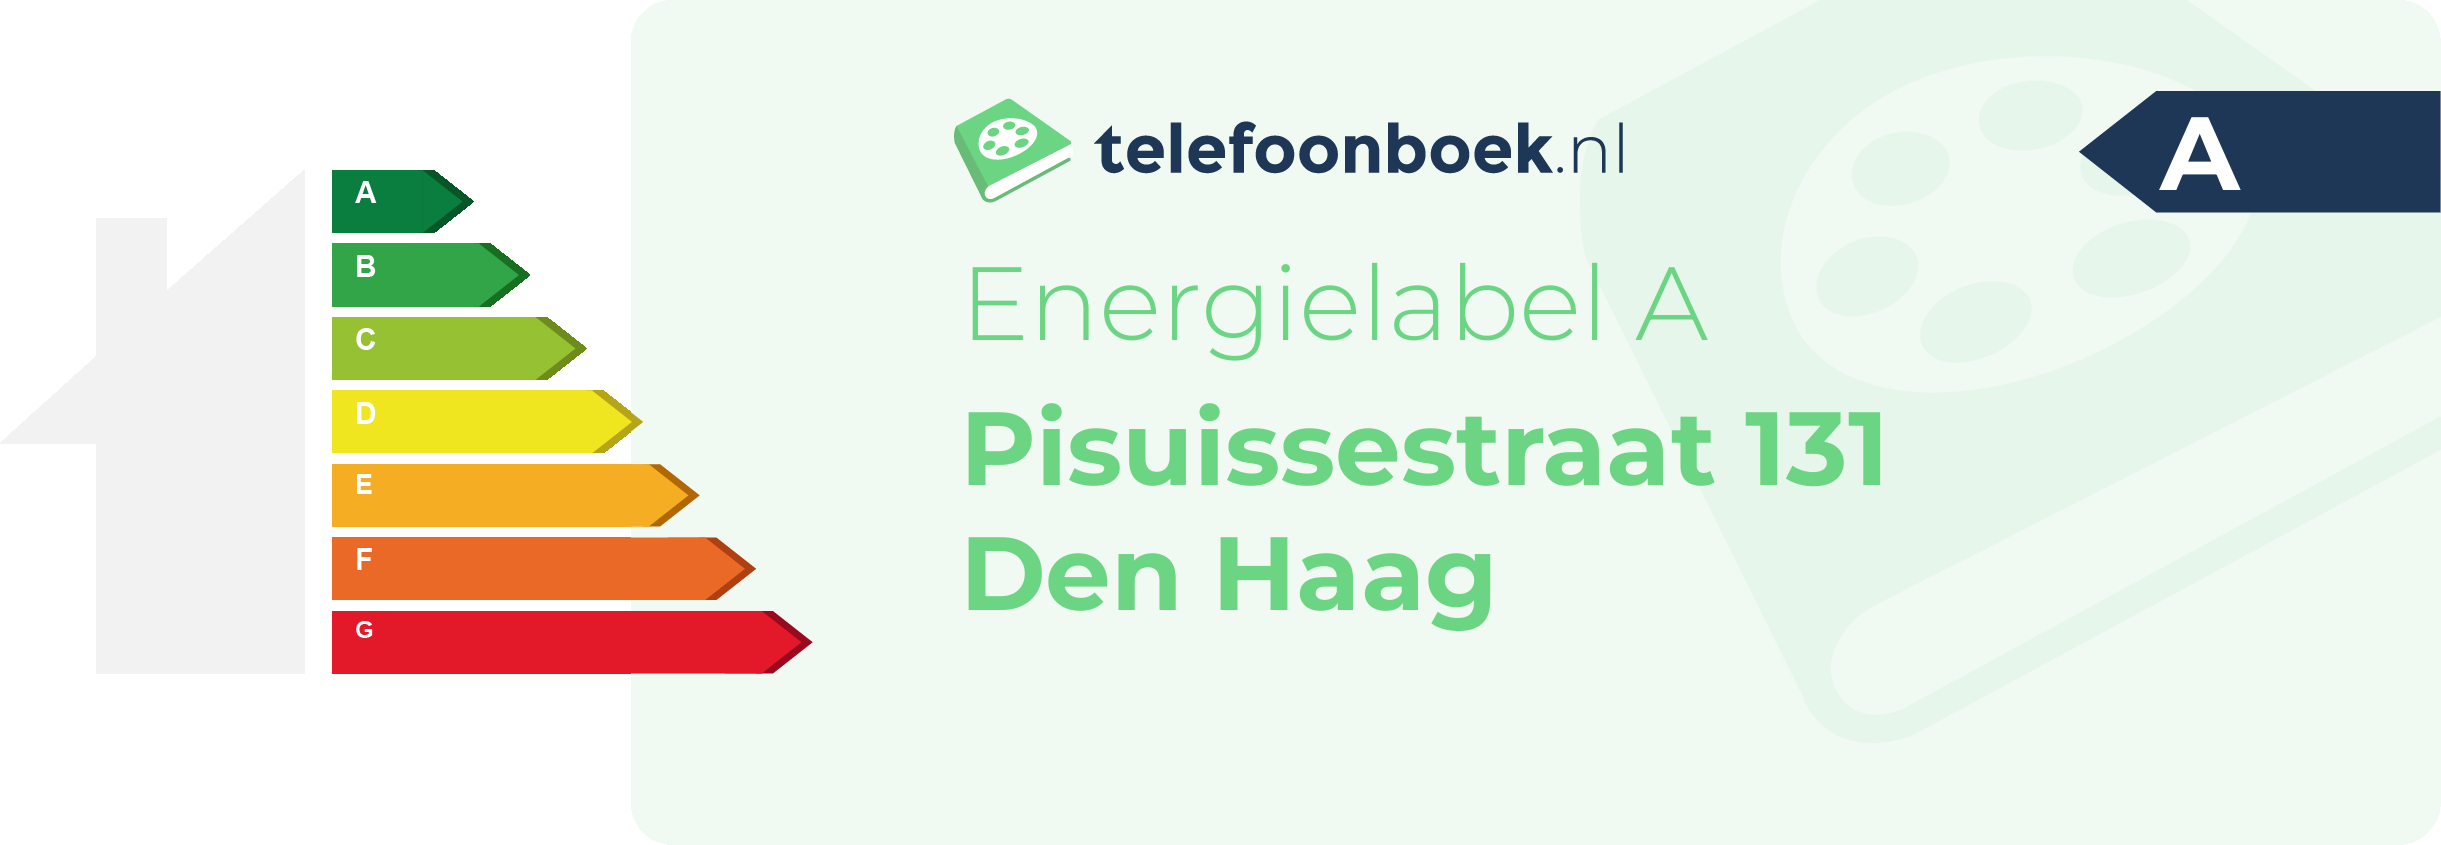 Energielabel Pisuissestraat 131 Den Haag